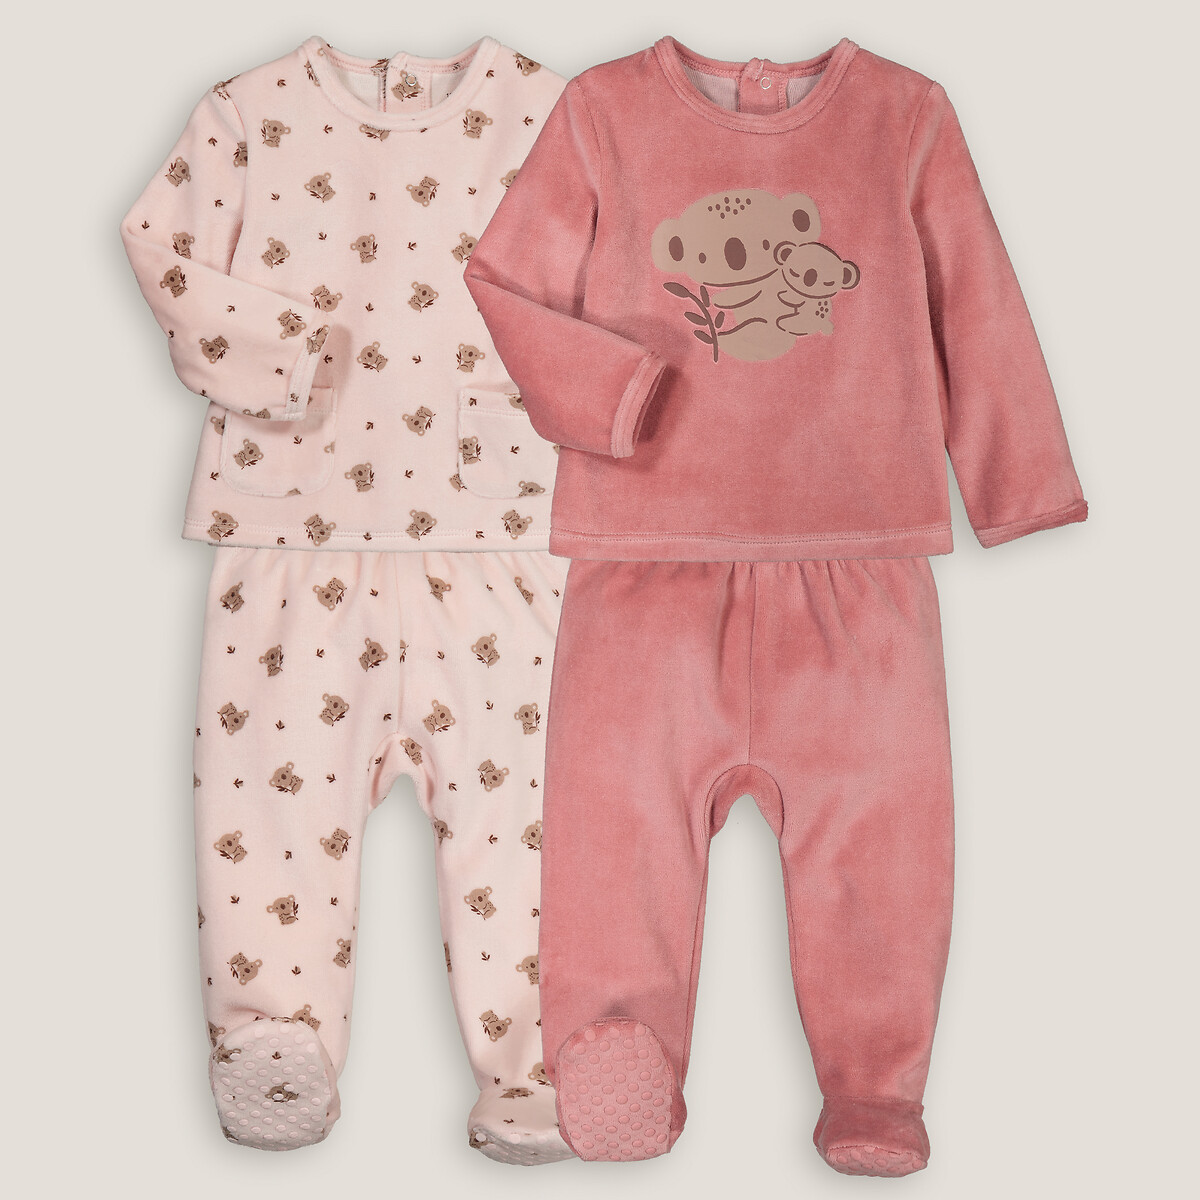 Комплект из двух пижам раздельных из велюра принт коалы 4 года - 102 см розовый комплект из двух пижам с шортами из хлопкового джерси 4 года 102 см серый